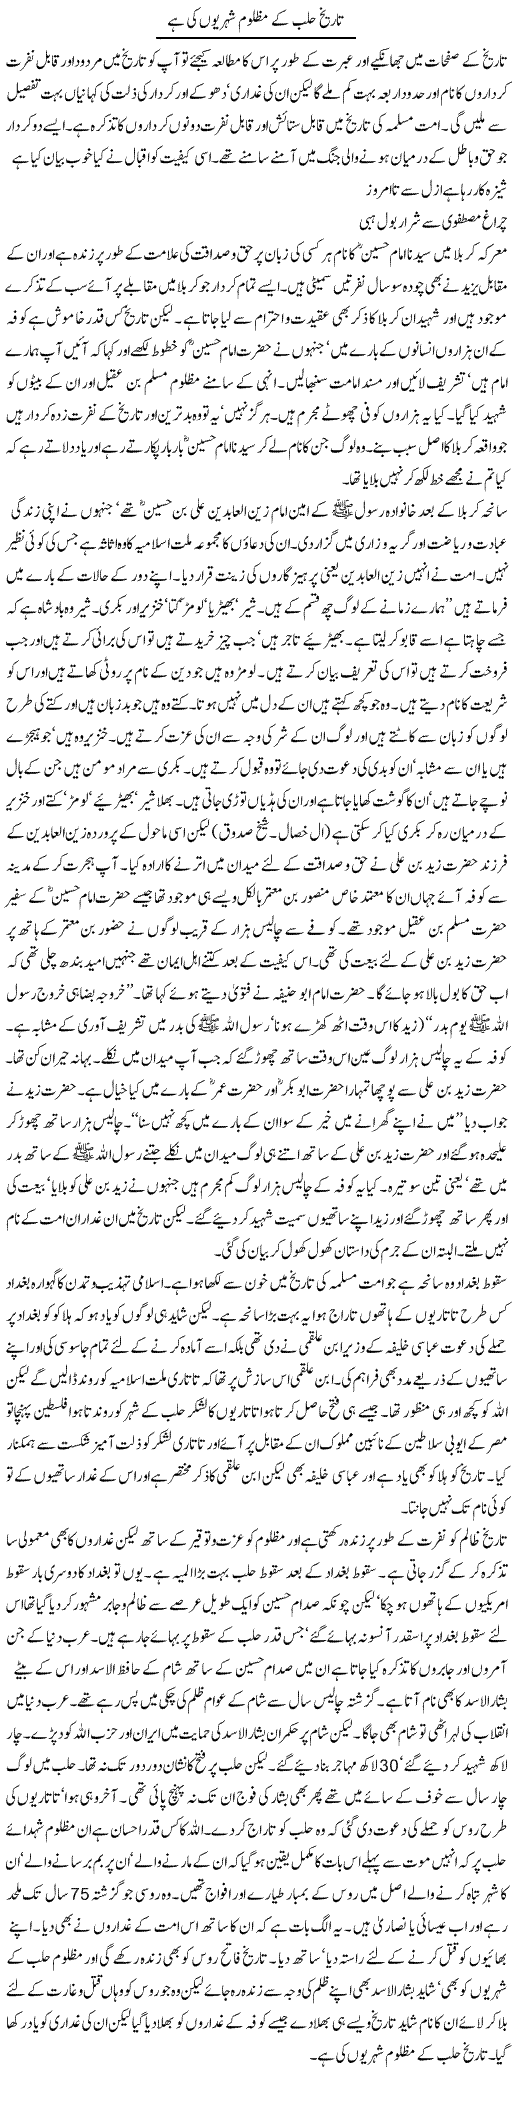 Tareekh Halab Ke Mazloom Shehrion Ki Hai | Orya Maqbool Jan | Daily Urdu Columns